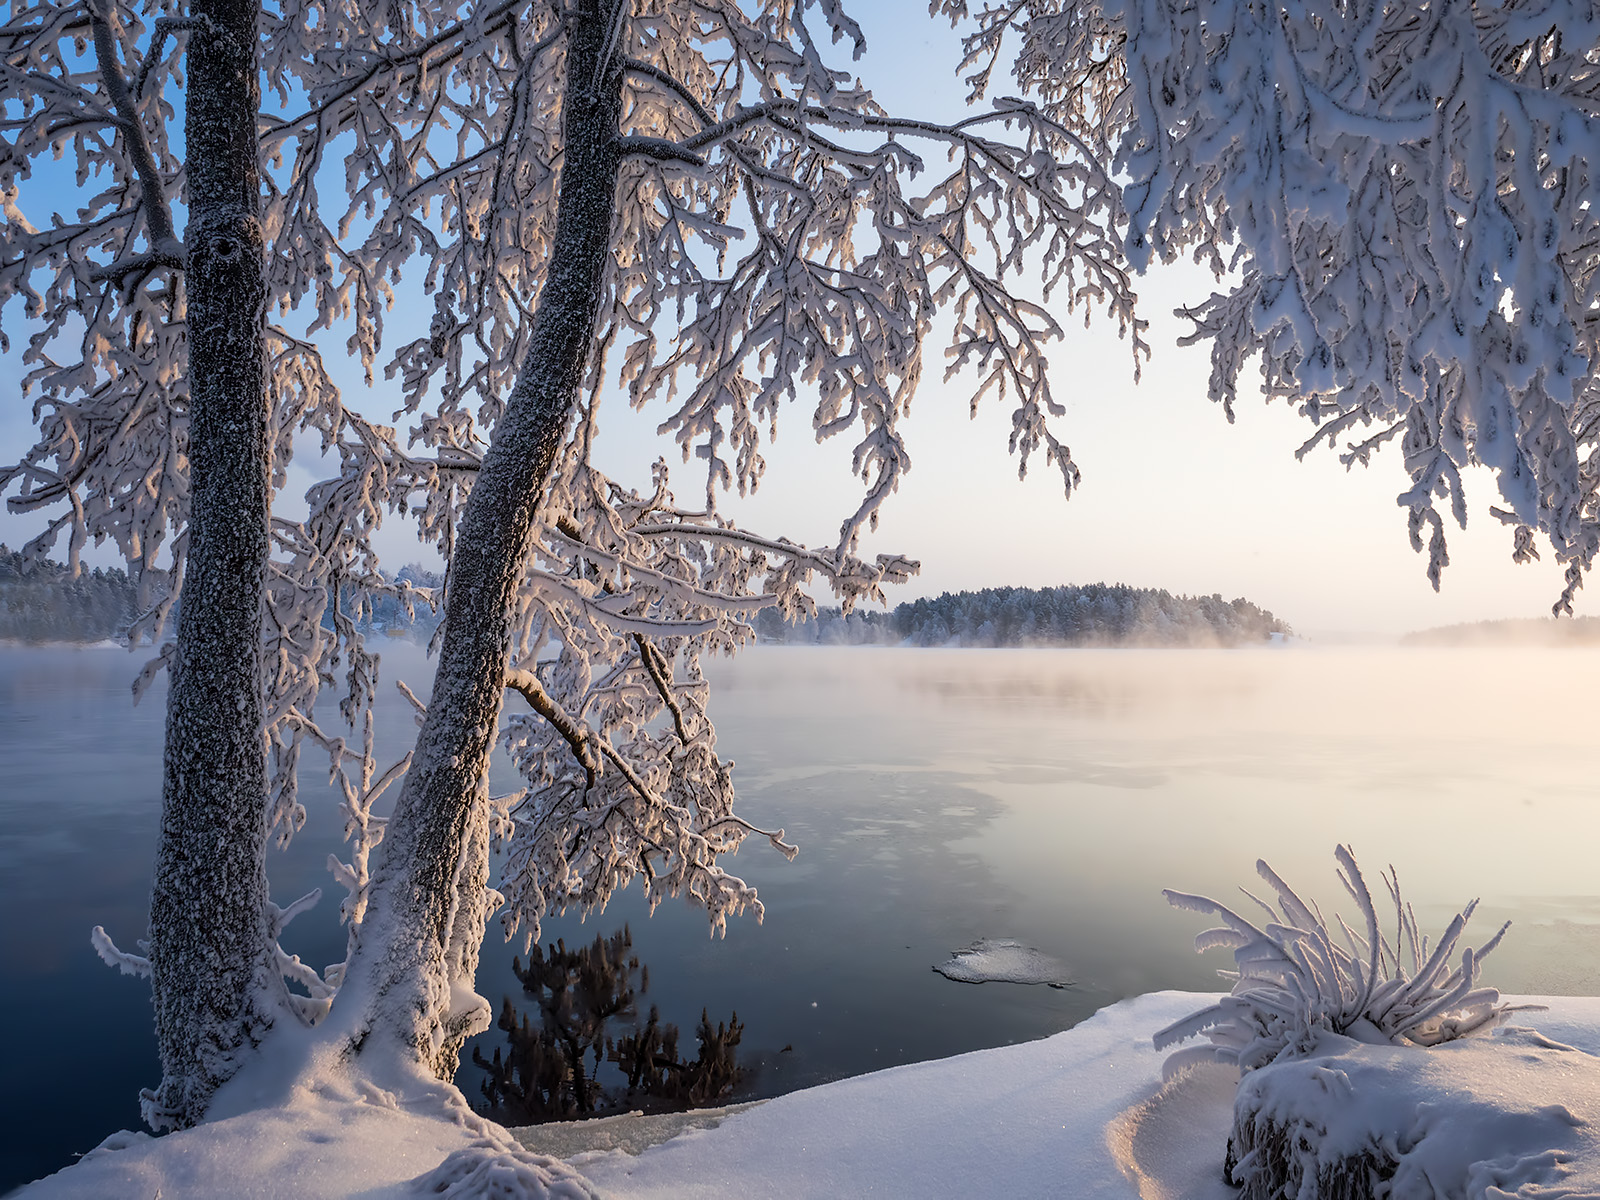 Бесплатное фото Фото финляндия, зима больших размеров